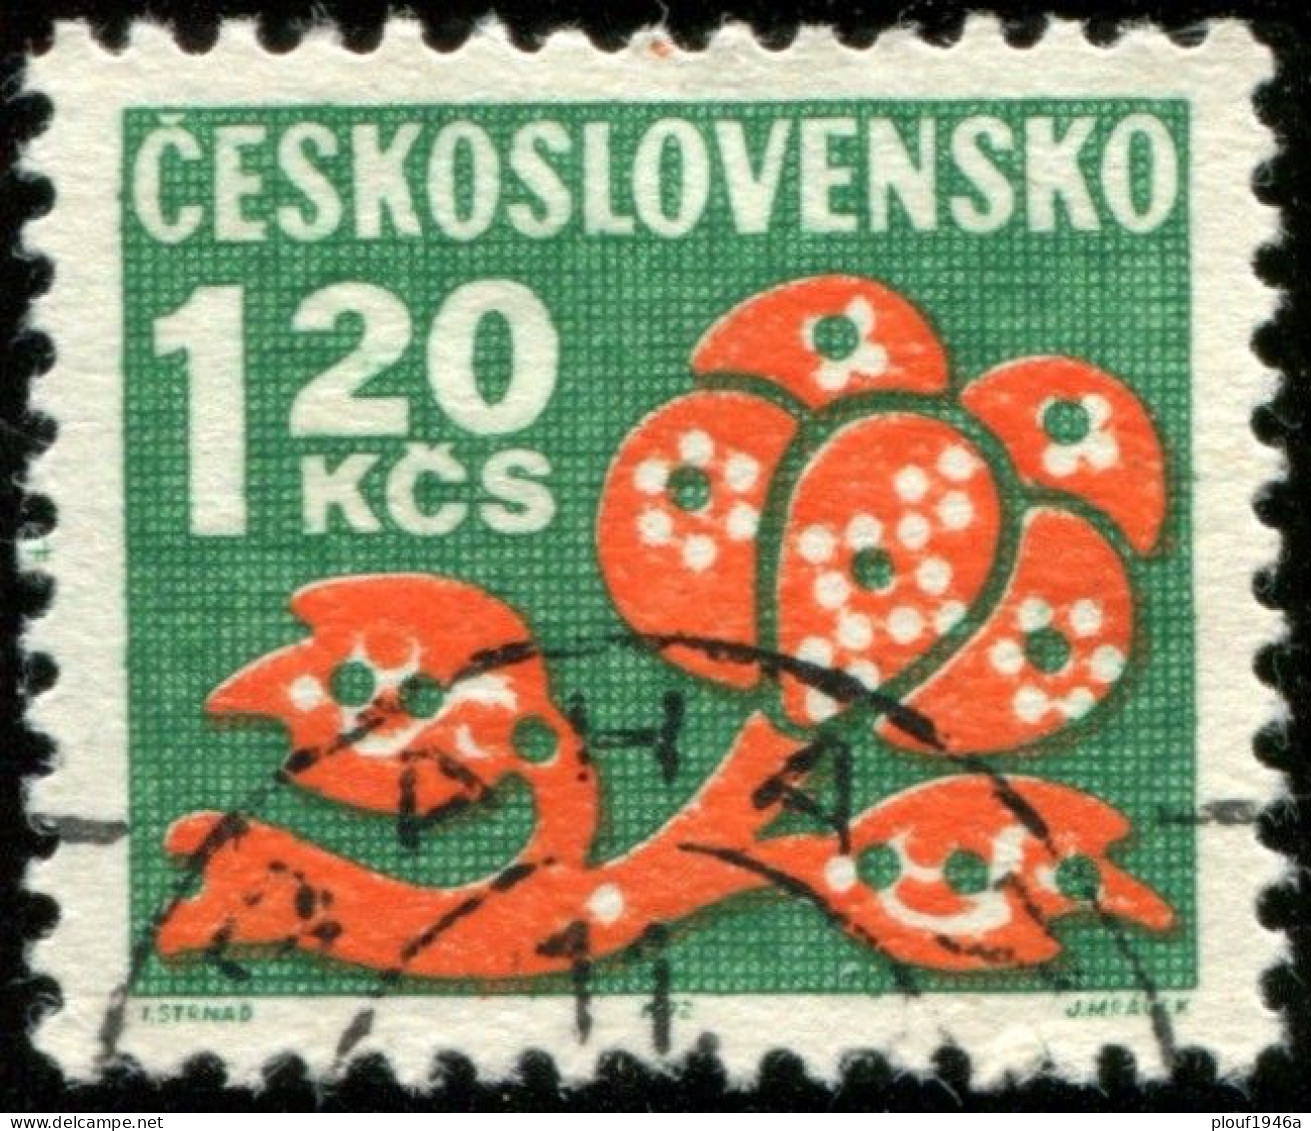 Pays : 464,2 (Tchécoslovaquie : République Fédérale)  Yvert Et Tellier N° : Tx   109 (o) - Portomarken